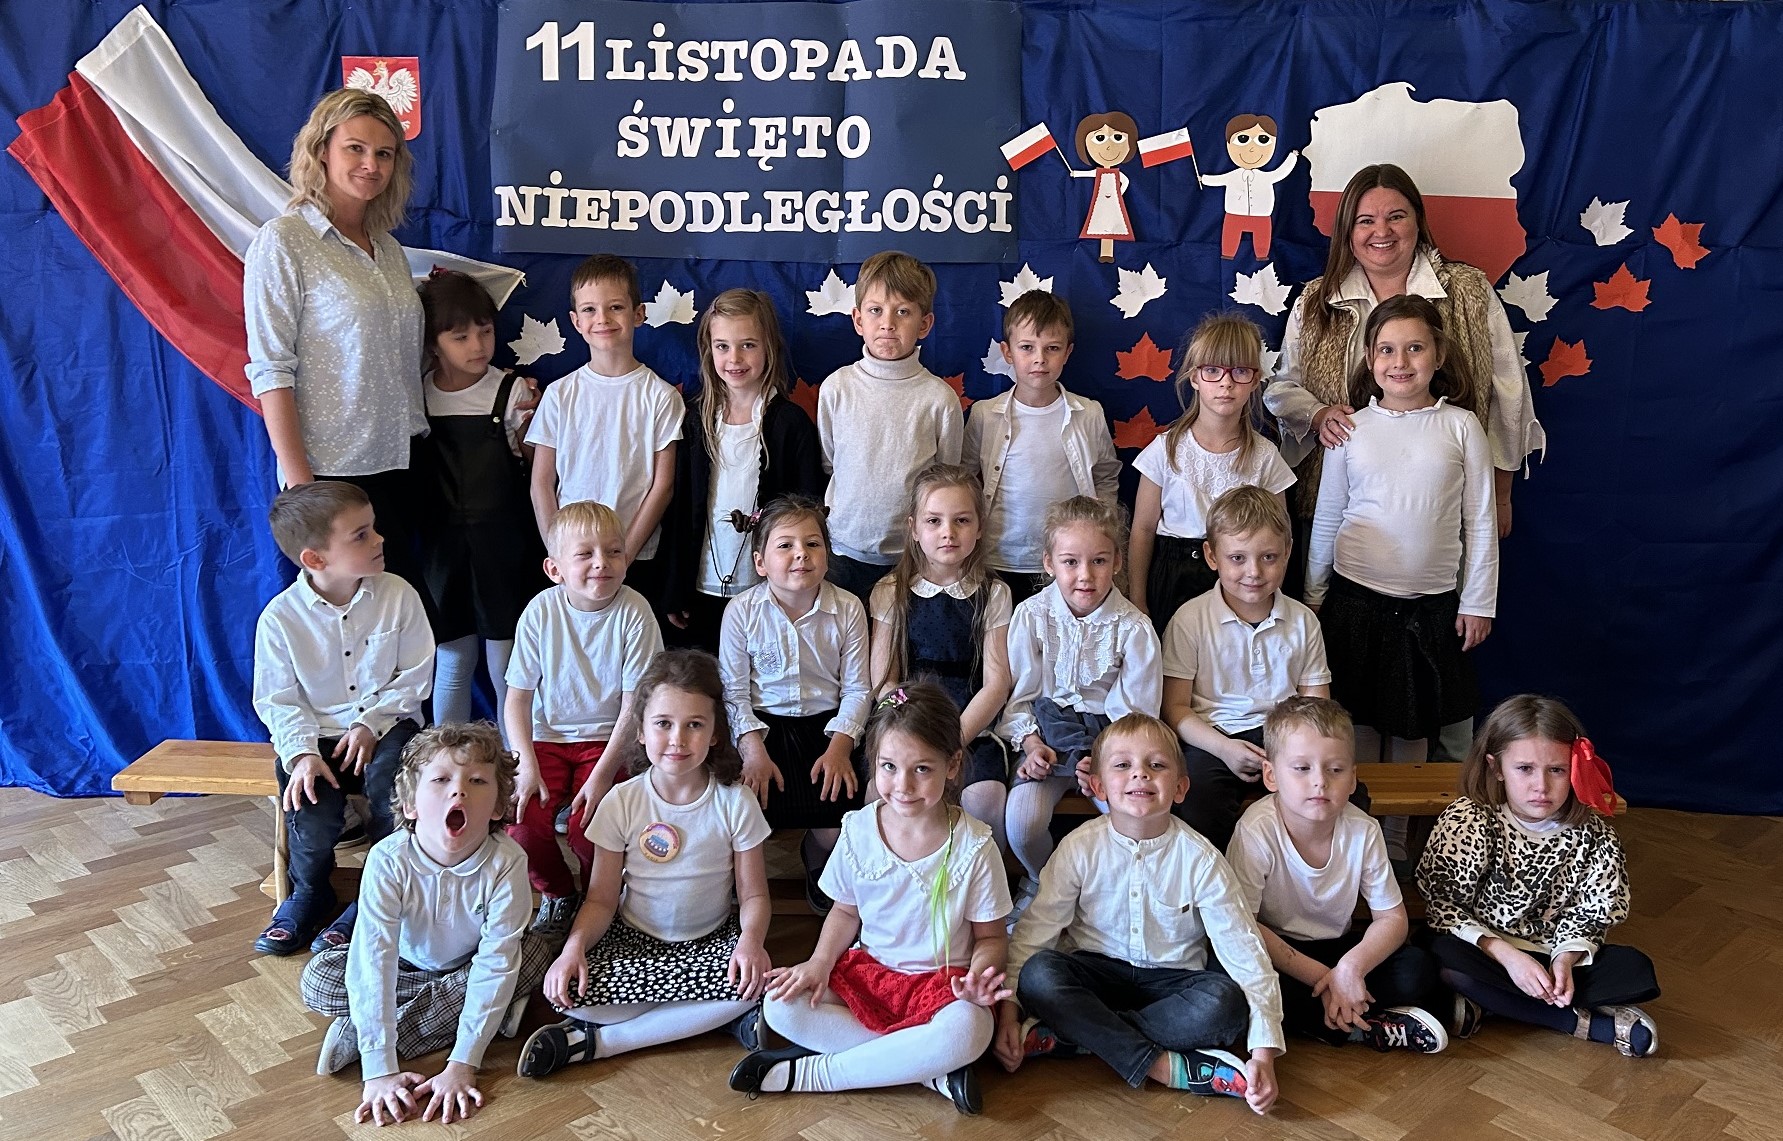 Grupa dzieci z nauczycielkami w galowych strojach pozuje na tle napisu Święto Niepodległości i flagi Polski.